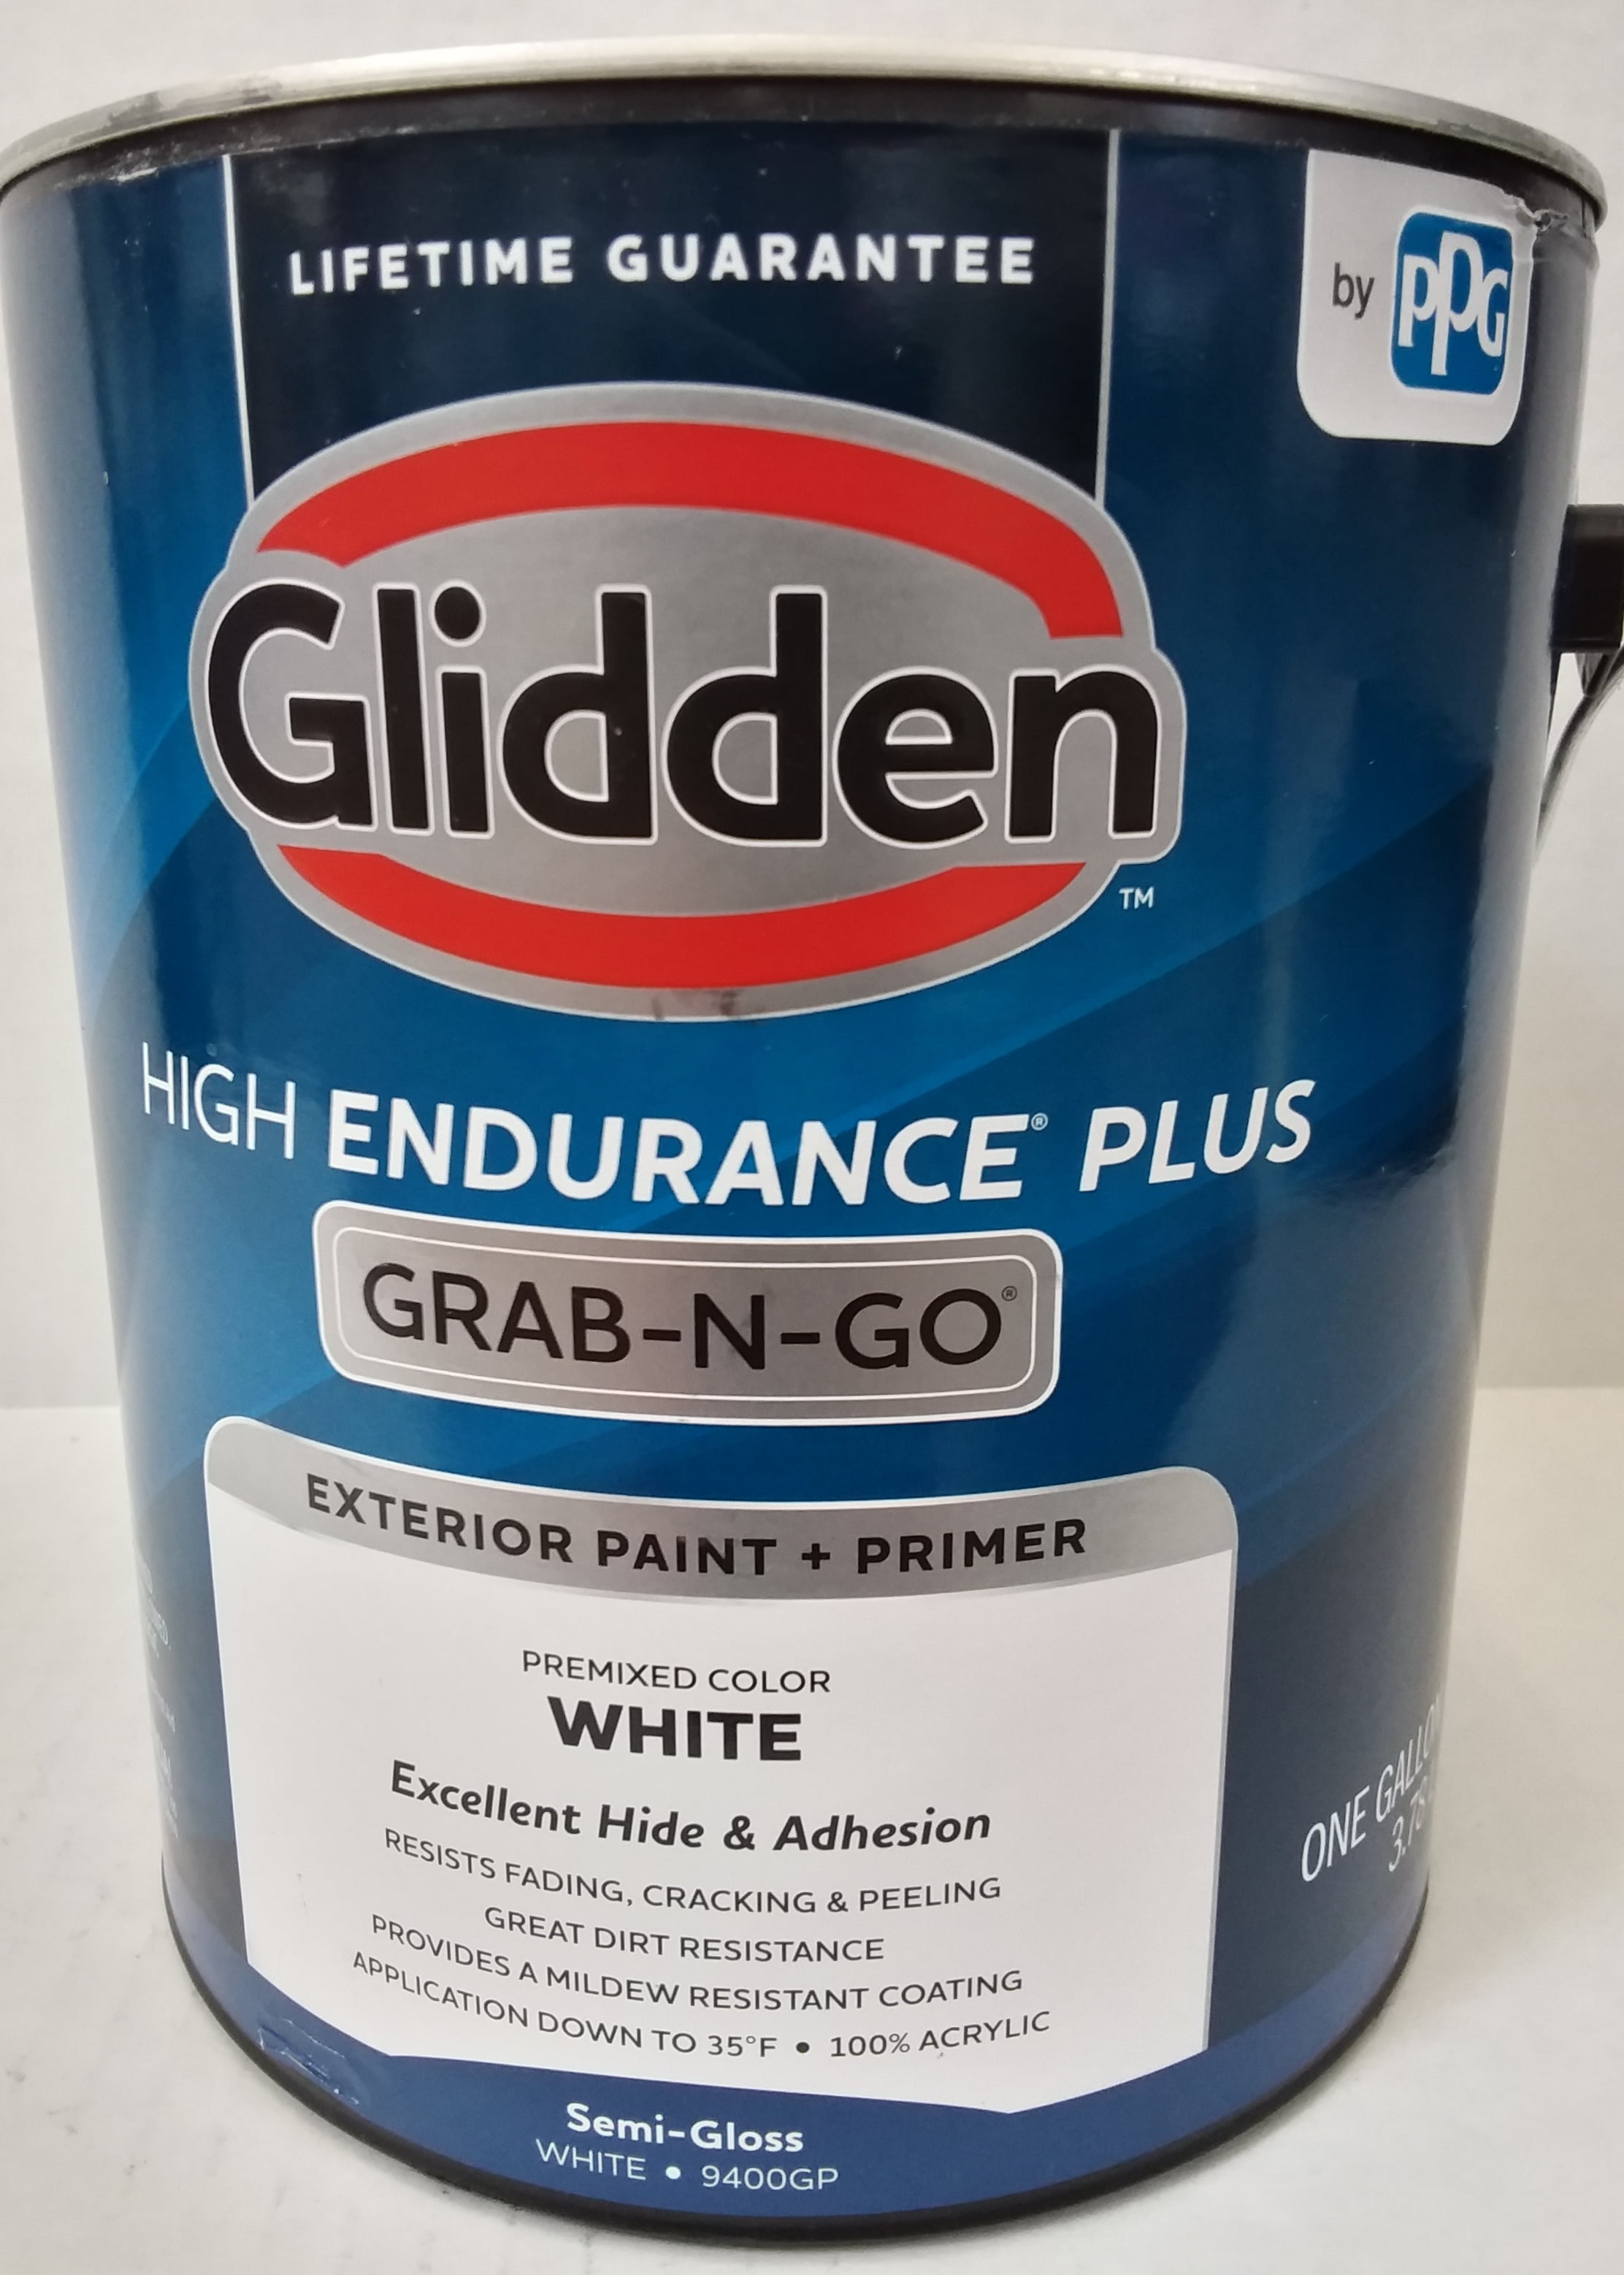 glidden-high-endurance-plus-grab-n-go-semi-gloss-exterior-paint